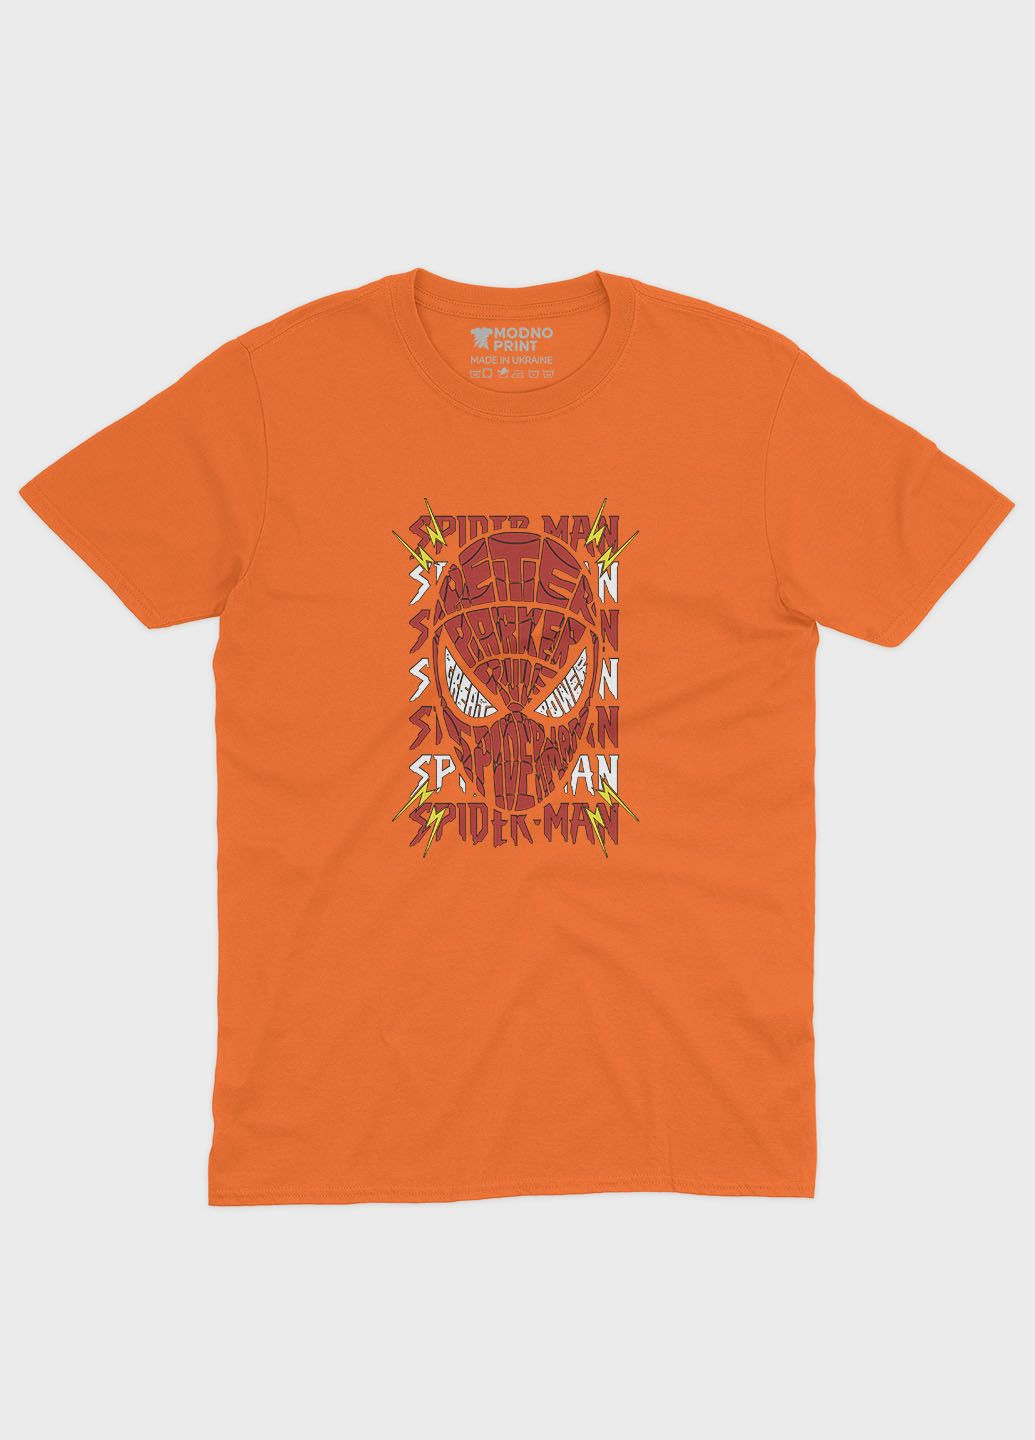 Оранжевая демисезонная футболка для девочки с принтом супергероя - человек-паук (ts001-1-ora-006-014-031-g) Modno